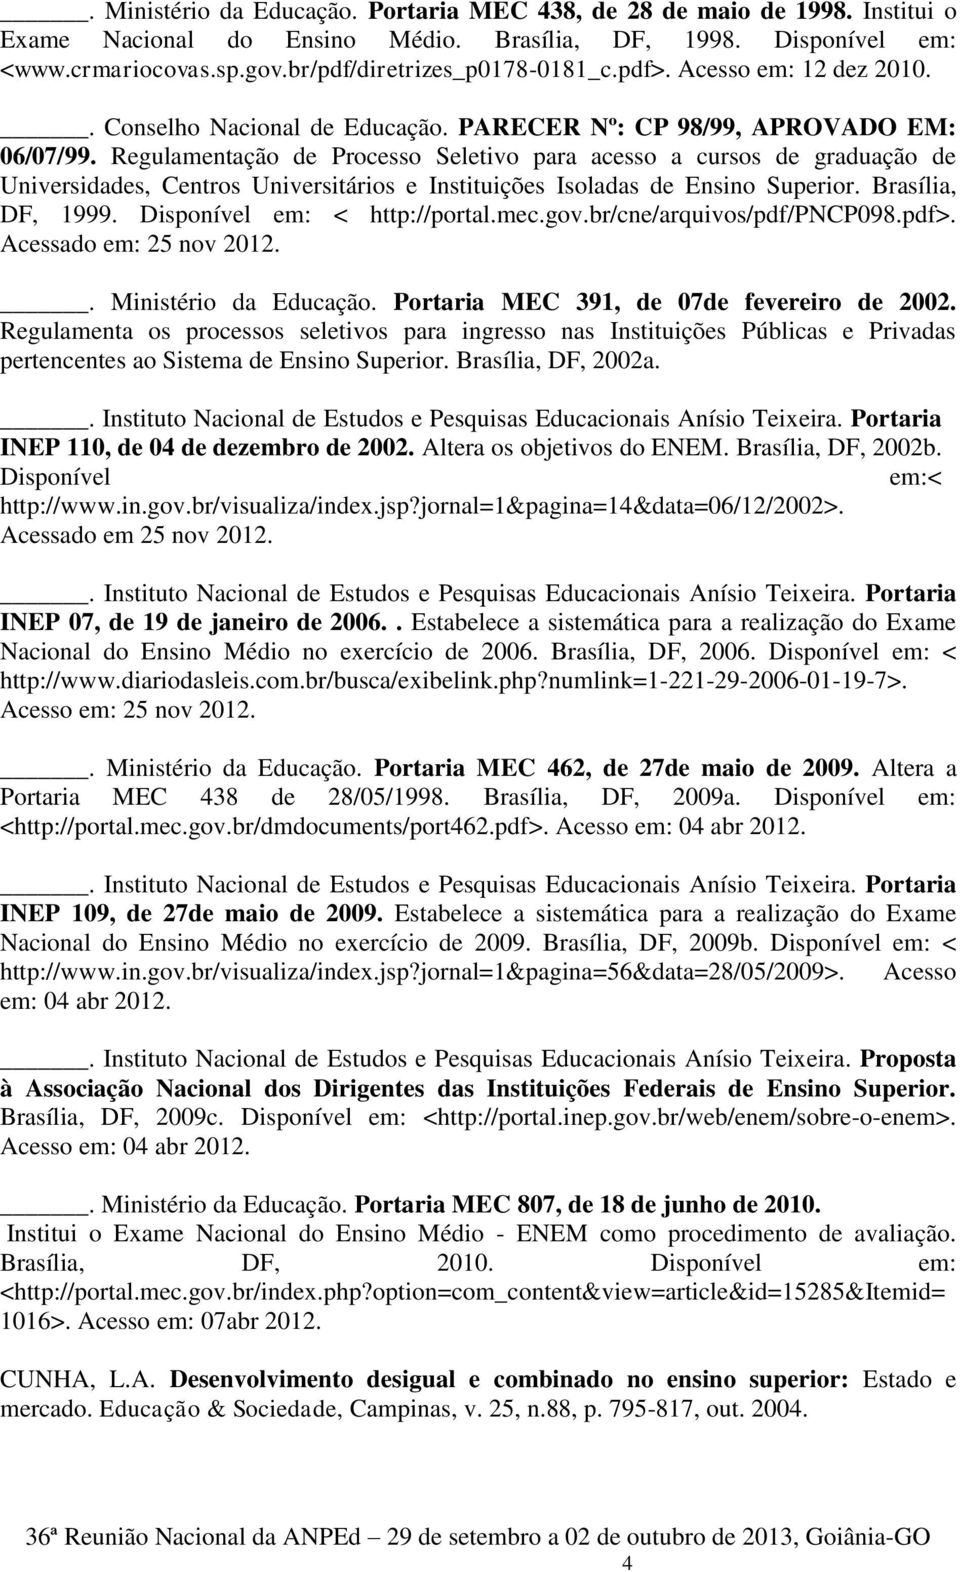 Regulamentação de Processo Seletivo para acesso a cursos de graduação de Universidades, Centros Universitários e Instituições Isoladas de Ensino Superior. Brasília, DF, 1999.